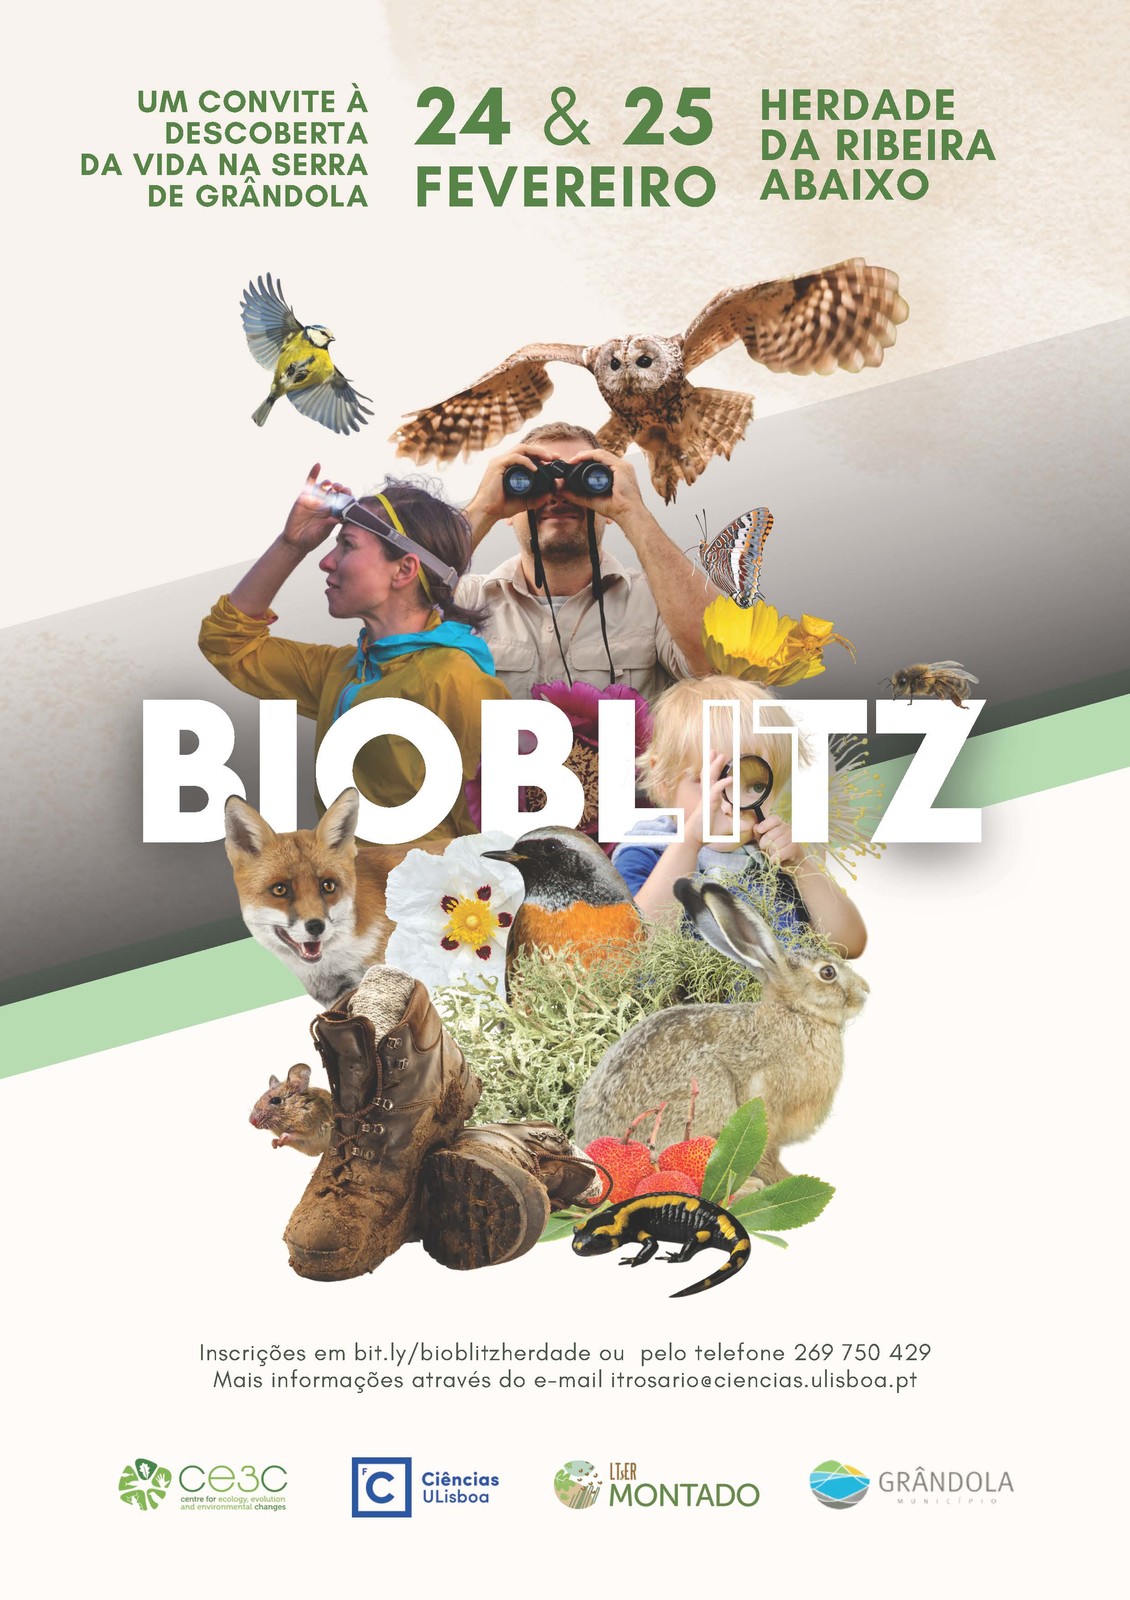 NATUREZA | BioBlitz Herdade da Ribeira Abaixo » Um Convite à Descoberta da Serra de Grândola